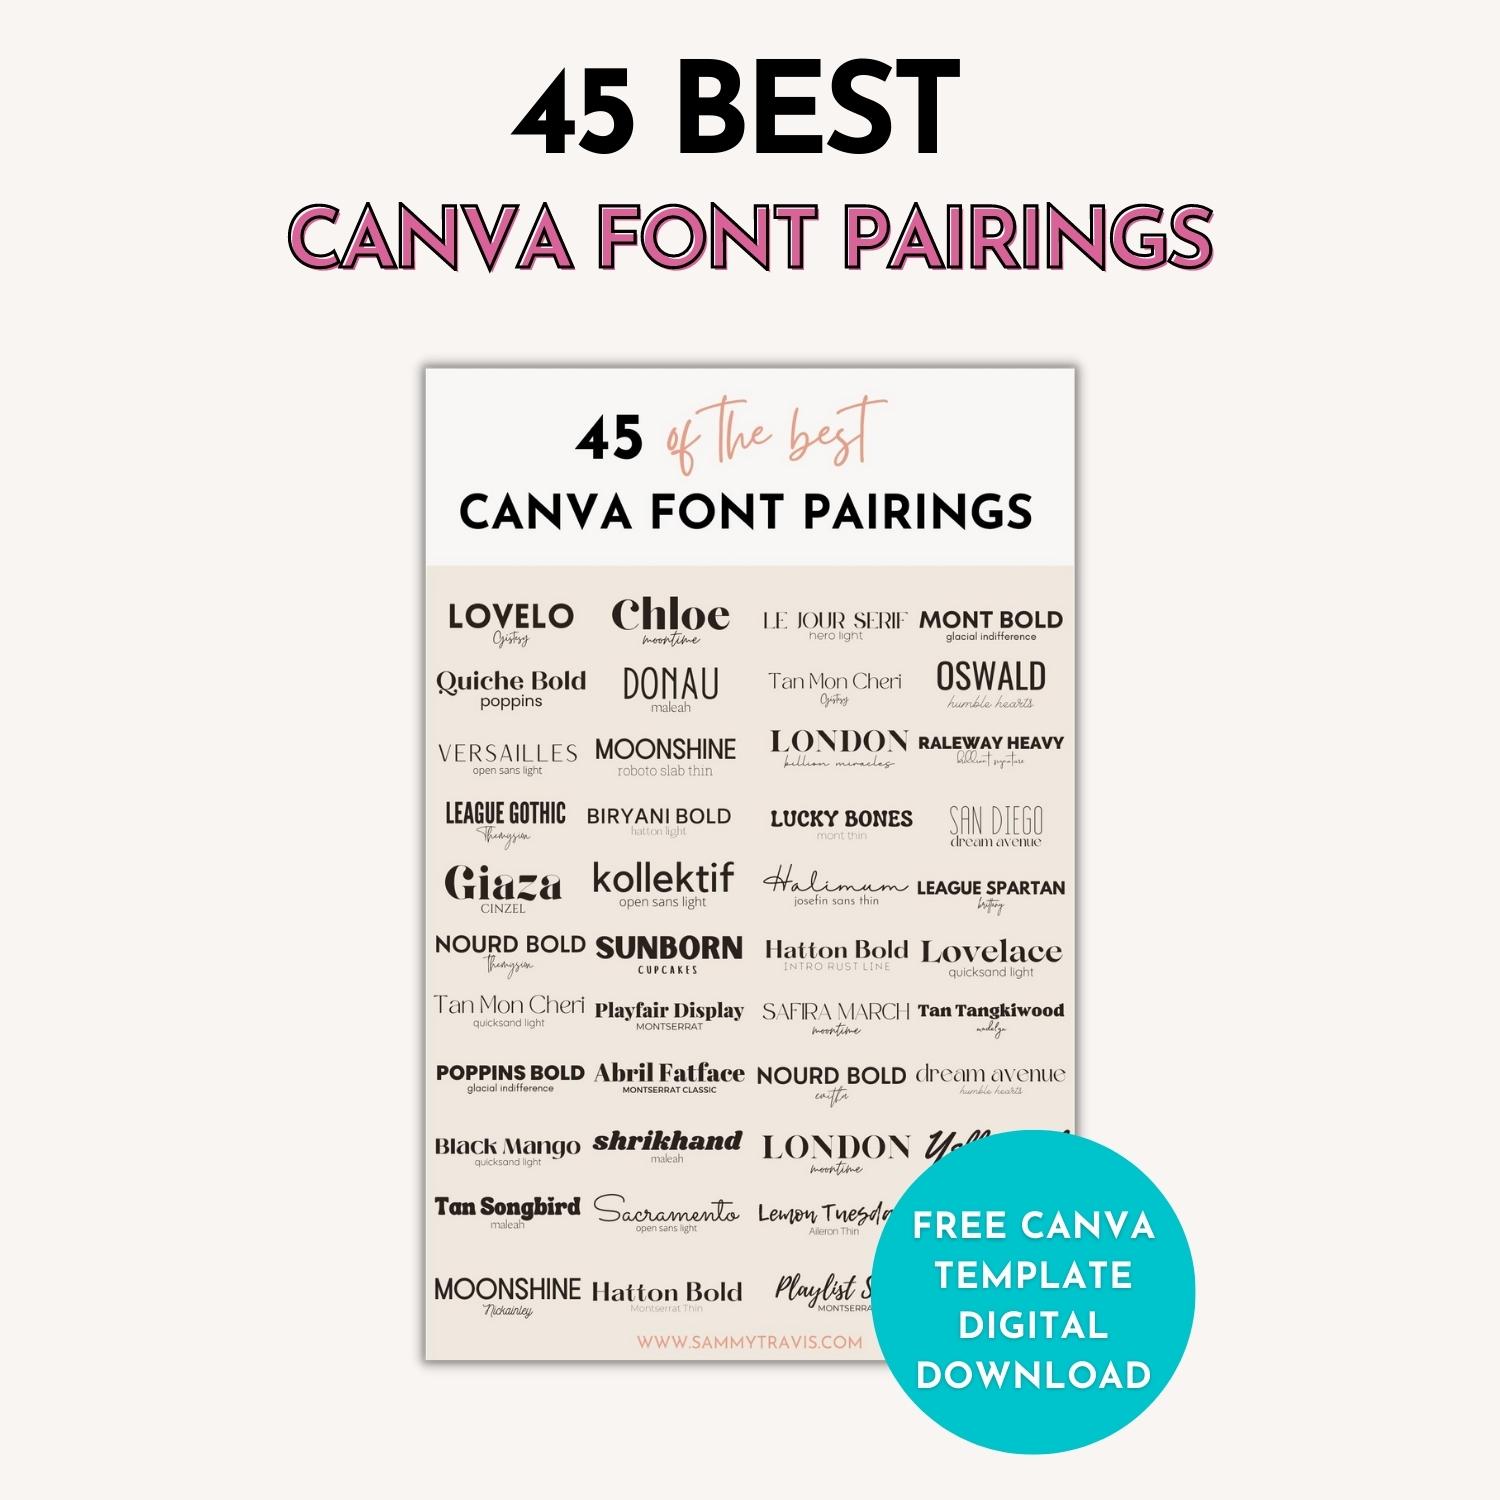 45 best Canva font pairings, best canva font combinations, best font pairings in canva, best font combinations in canva, best canva font parirings, best Canva font combos